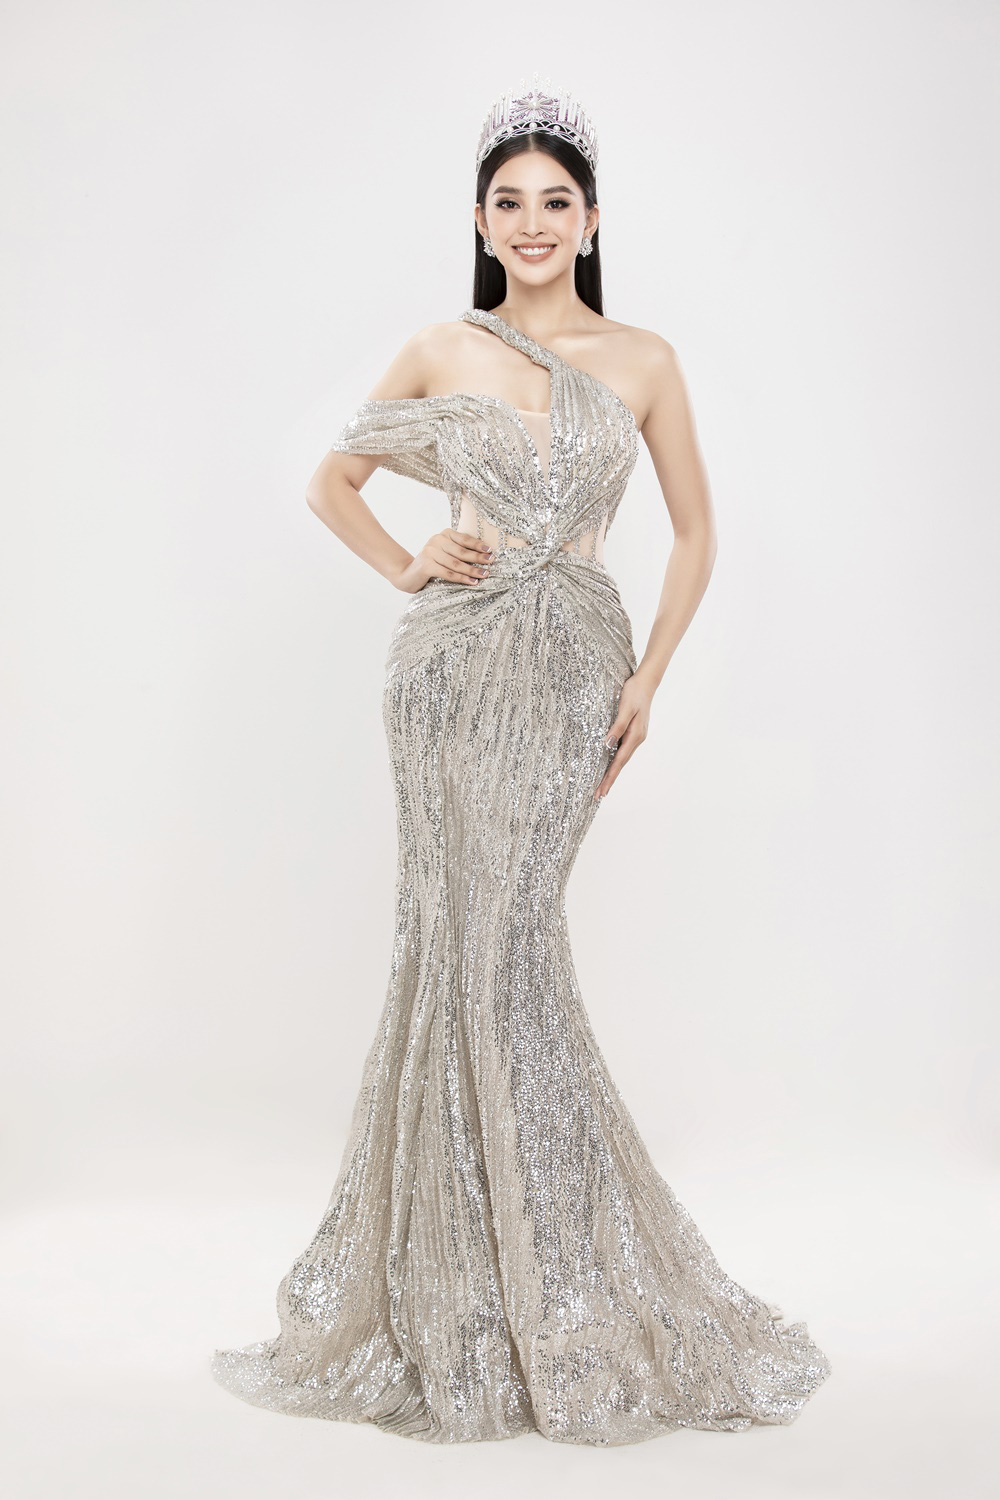 Hoa hậu Việt Nam 2020 chính thức khởi động, bộ ba Tiểu Vy - Thúy An - Phương Nga đẹp quyền lực sau gần 2 năm đăng quang - Ảnh 5.